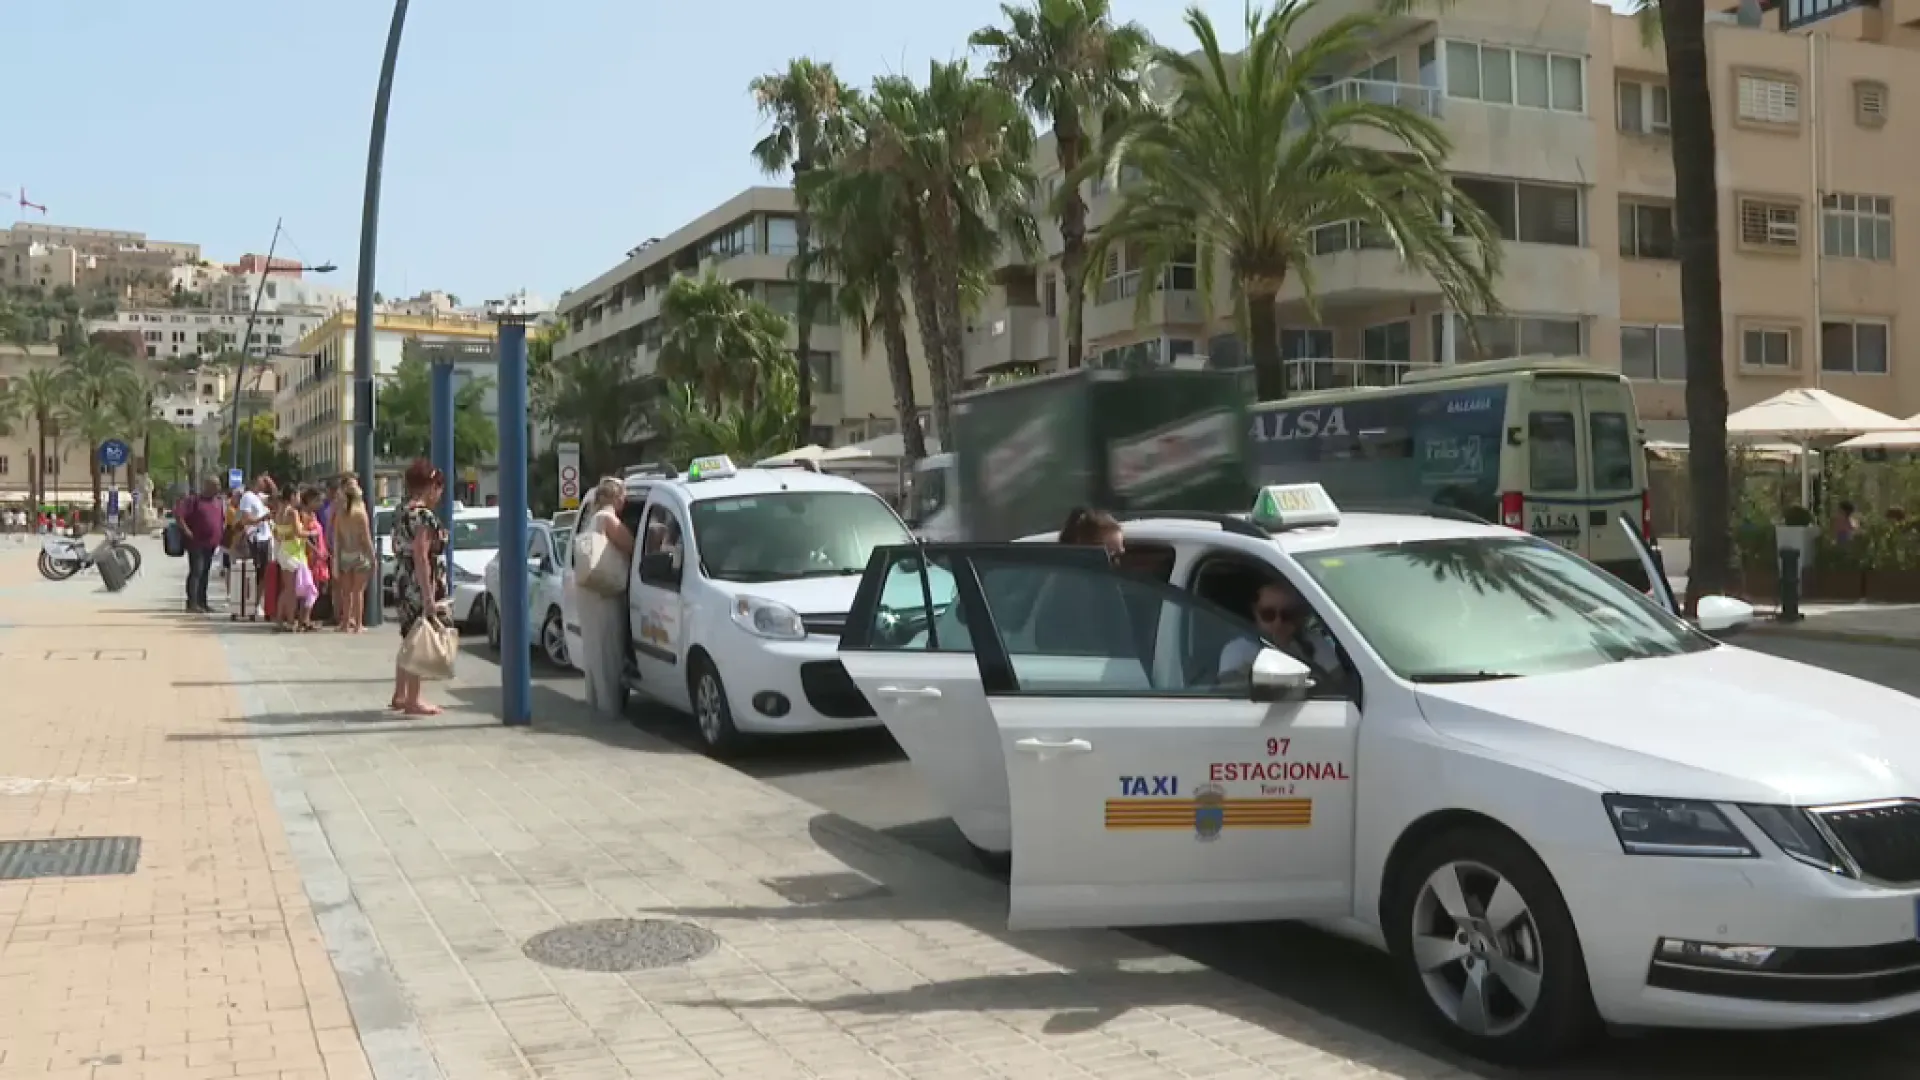 El Govern preveu impulsar un sistema unificat de taxi a Mallorca basat en una aplicació tecnològica única